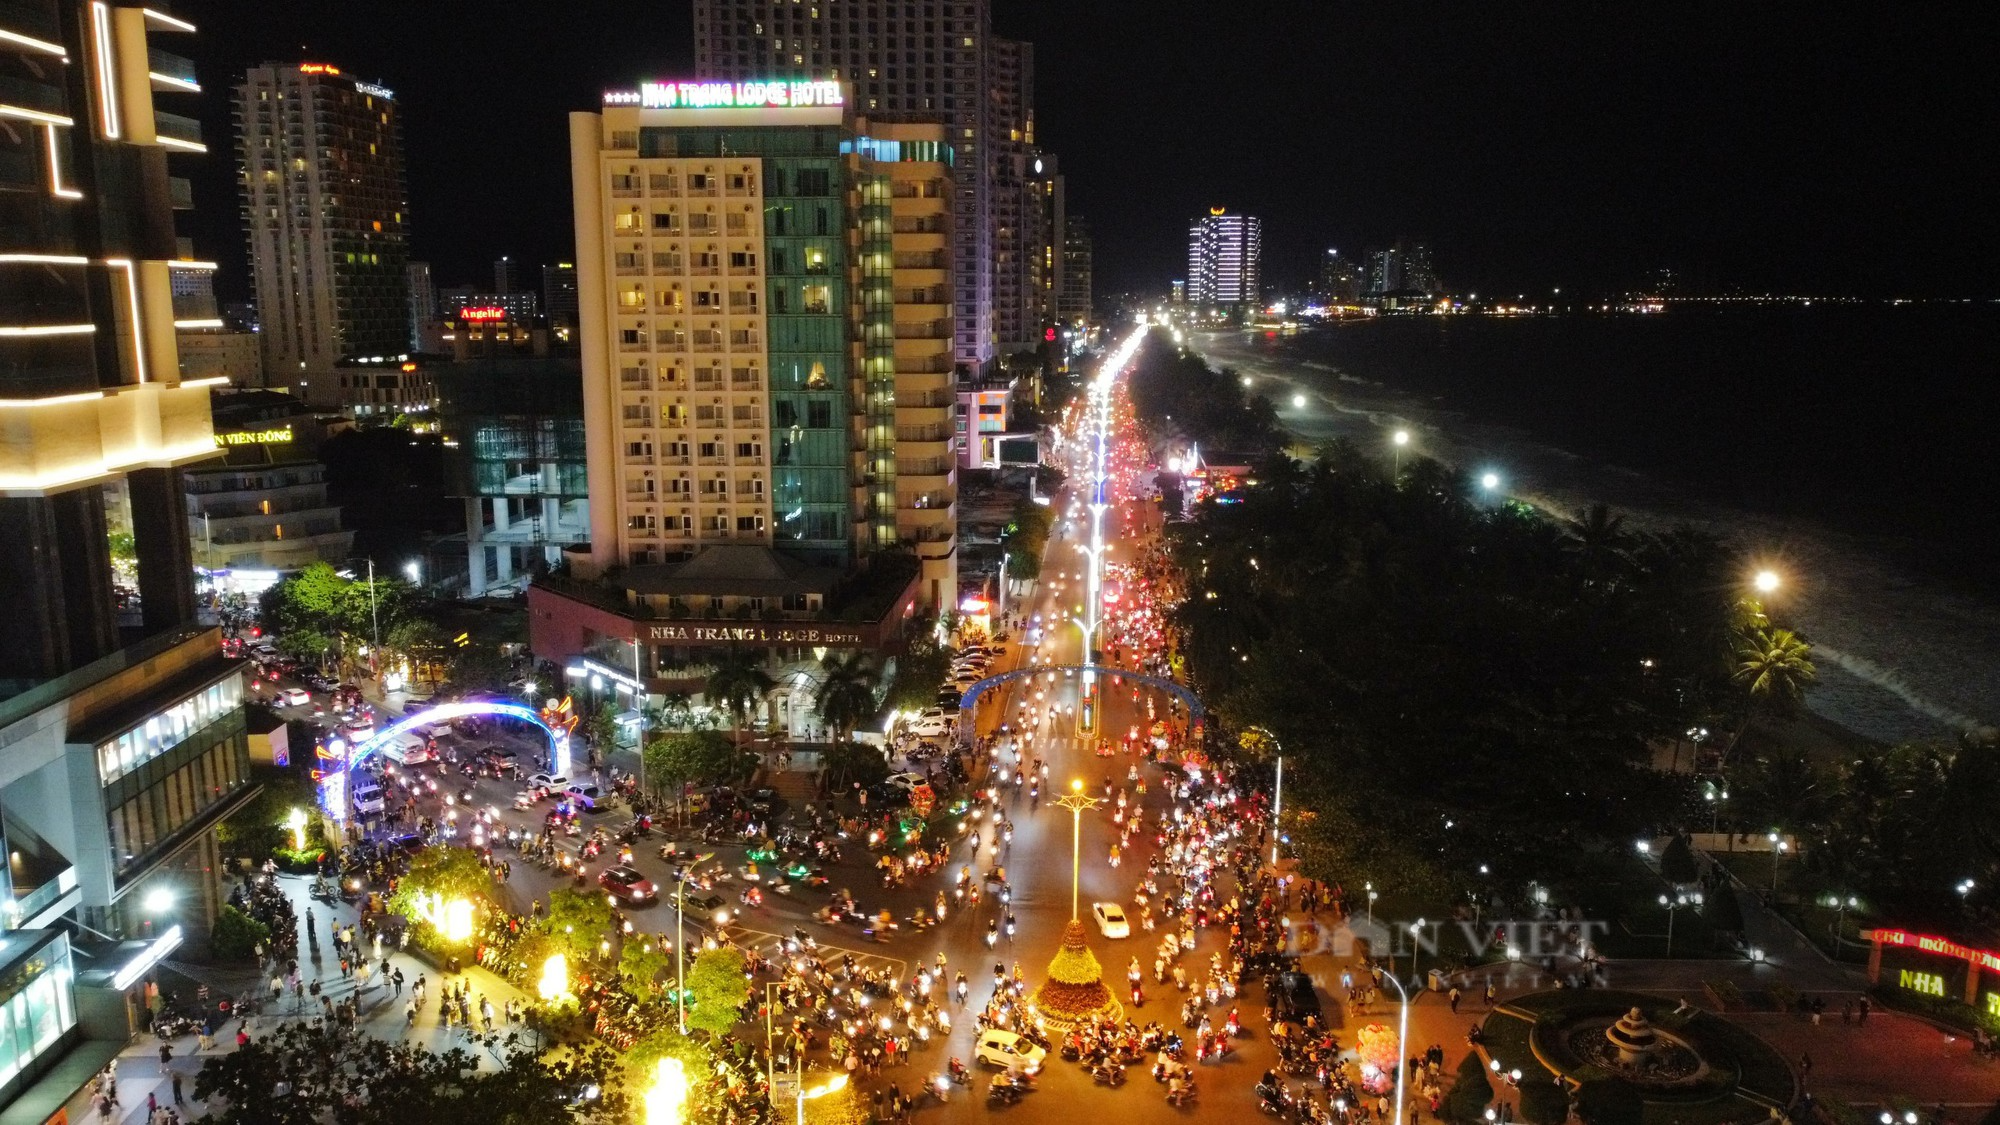 Cận cảnh: Ngập tràn người dân đón Tết tại thành phố biển Nha Trang - Ảnh 1.